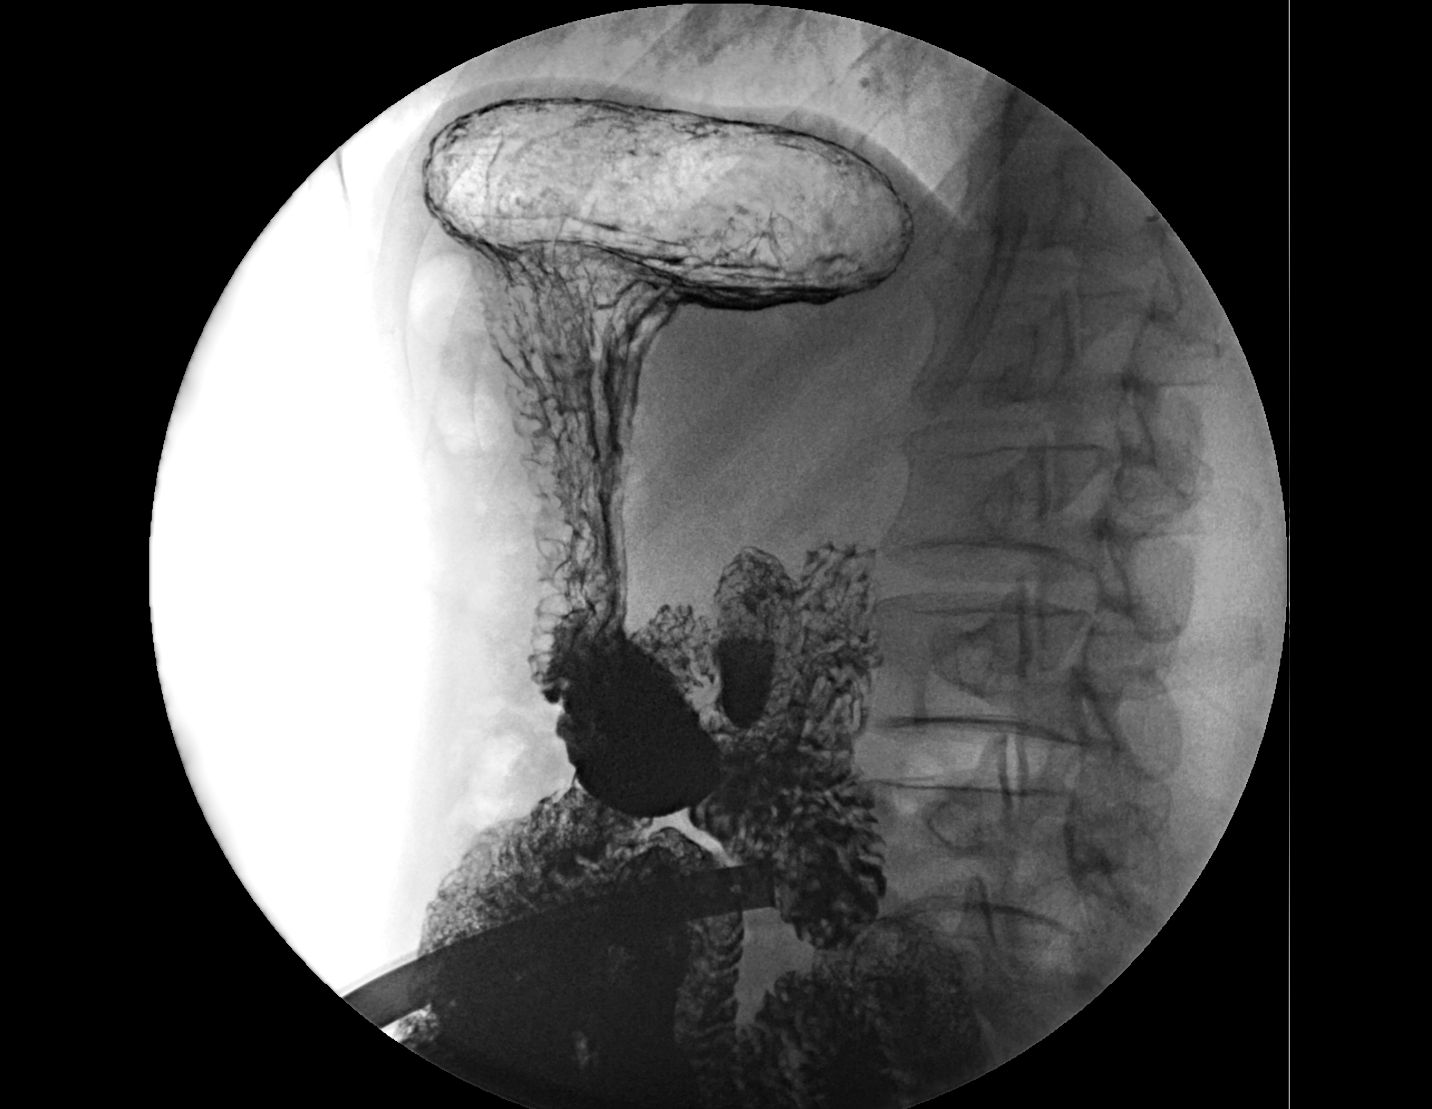 Рентгеноскопия желудка